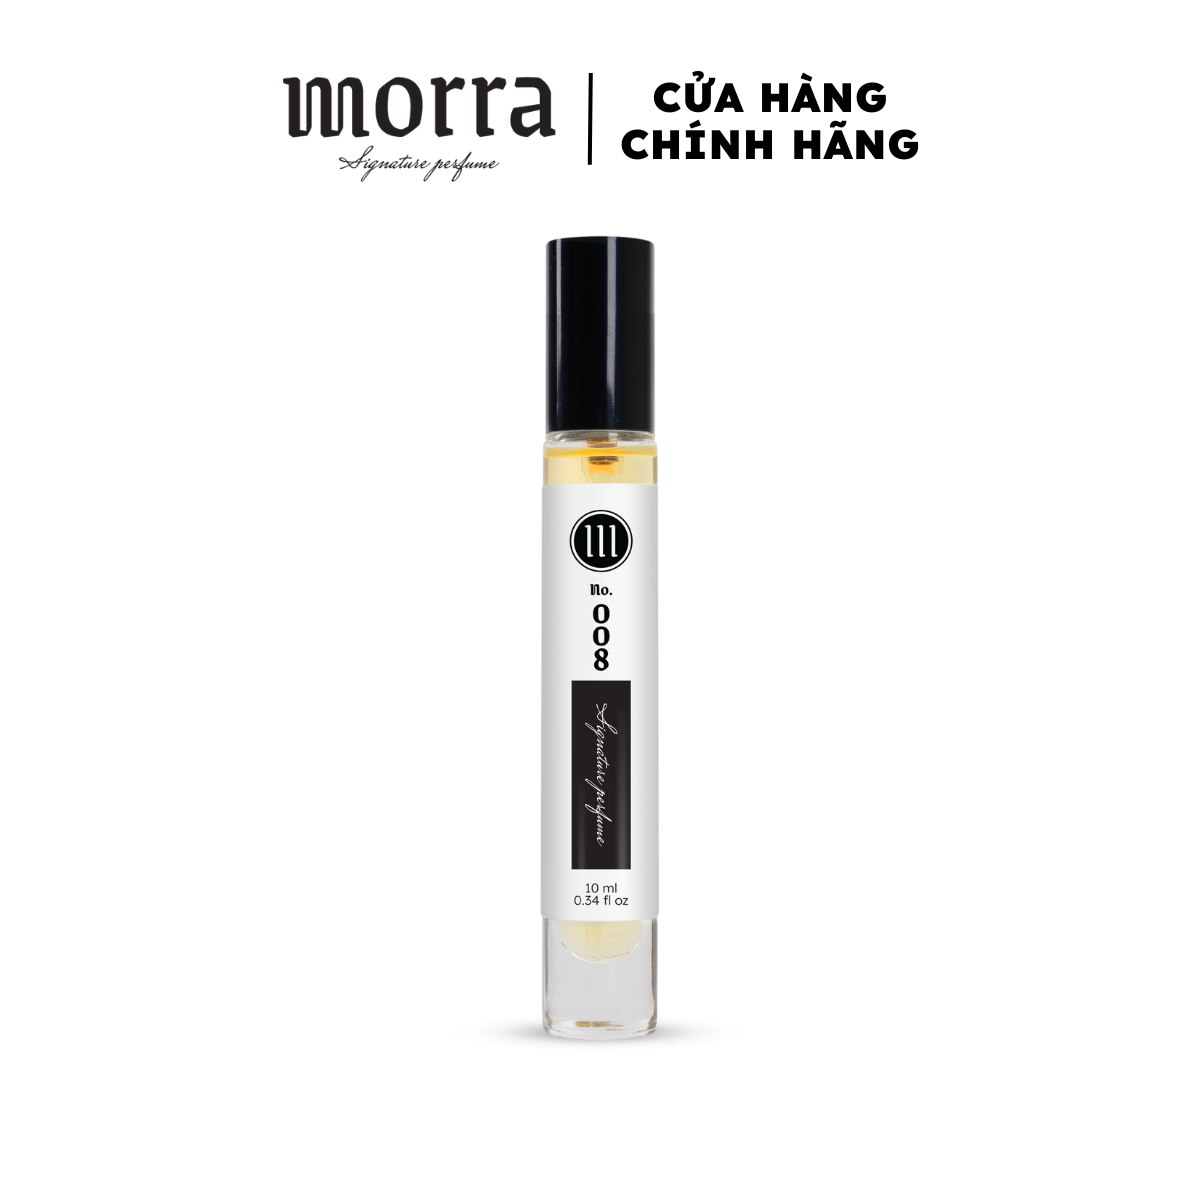 Nước hoa Nam Morra No.008 (Clove Tonka 08), nguyên liệu nhập Pháp, mùi hương bí ẩn, cuốn hút, gợi cảm, lưu hương lâu - dạng xịt 10ml